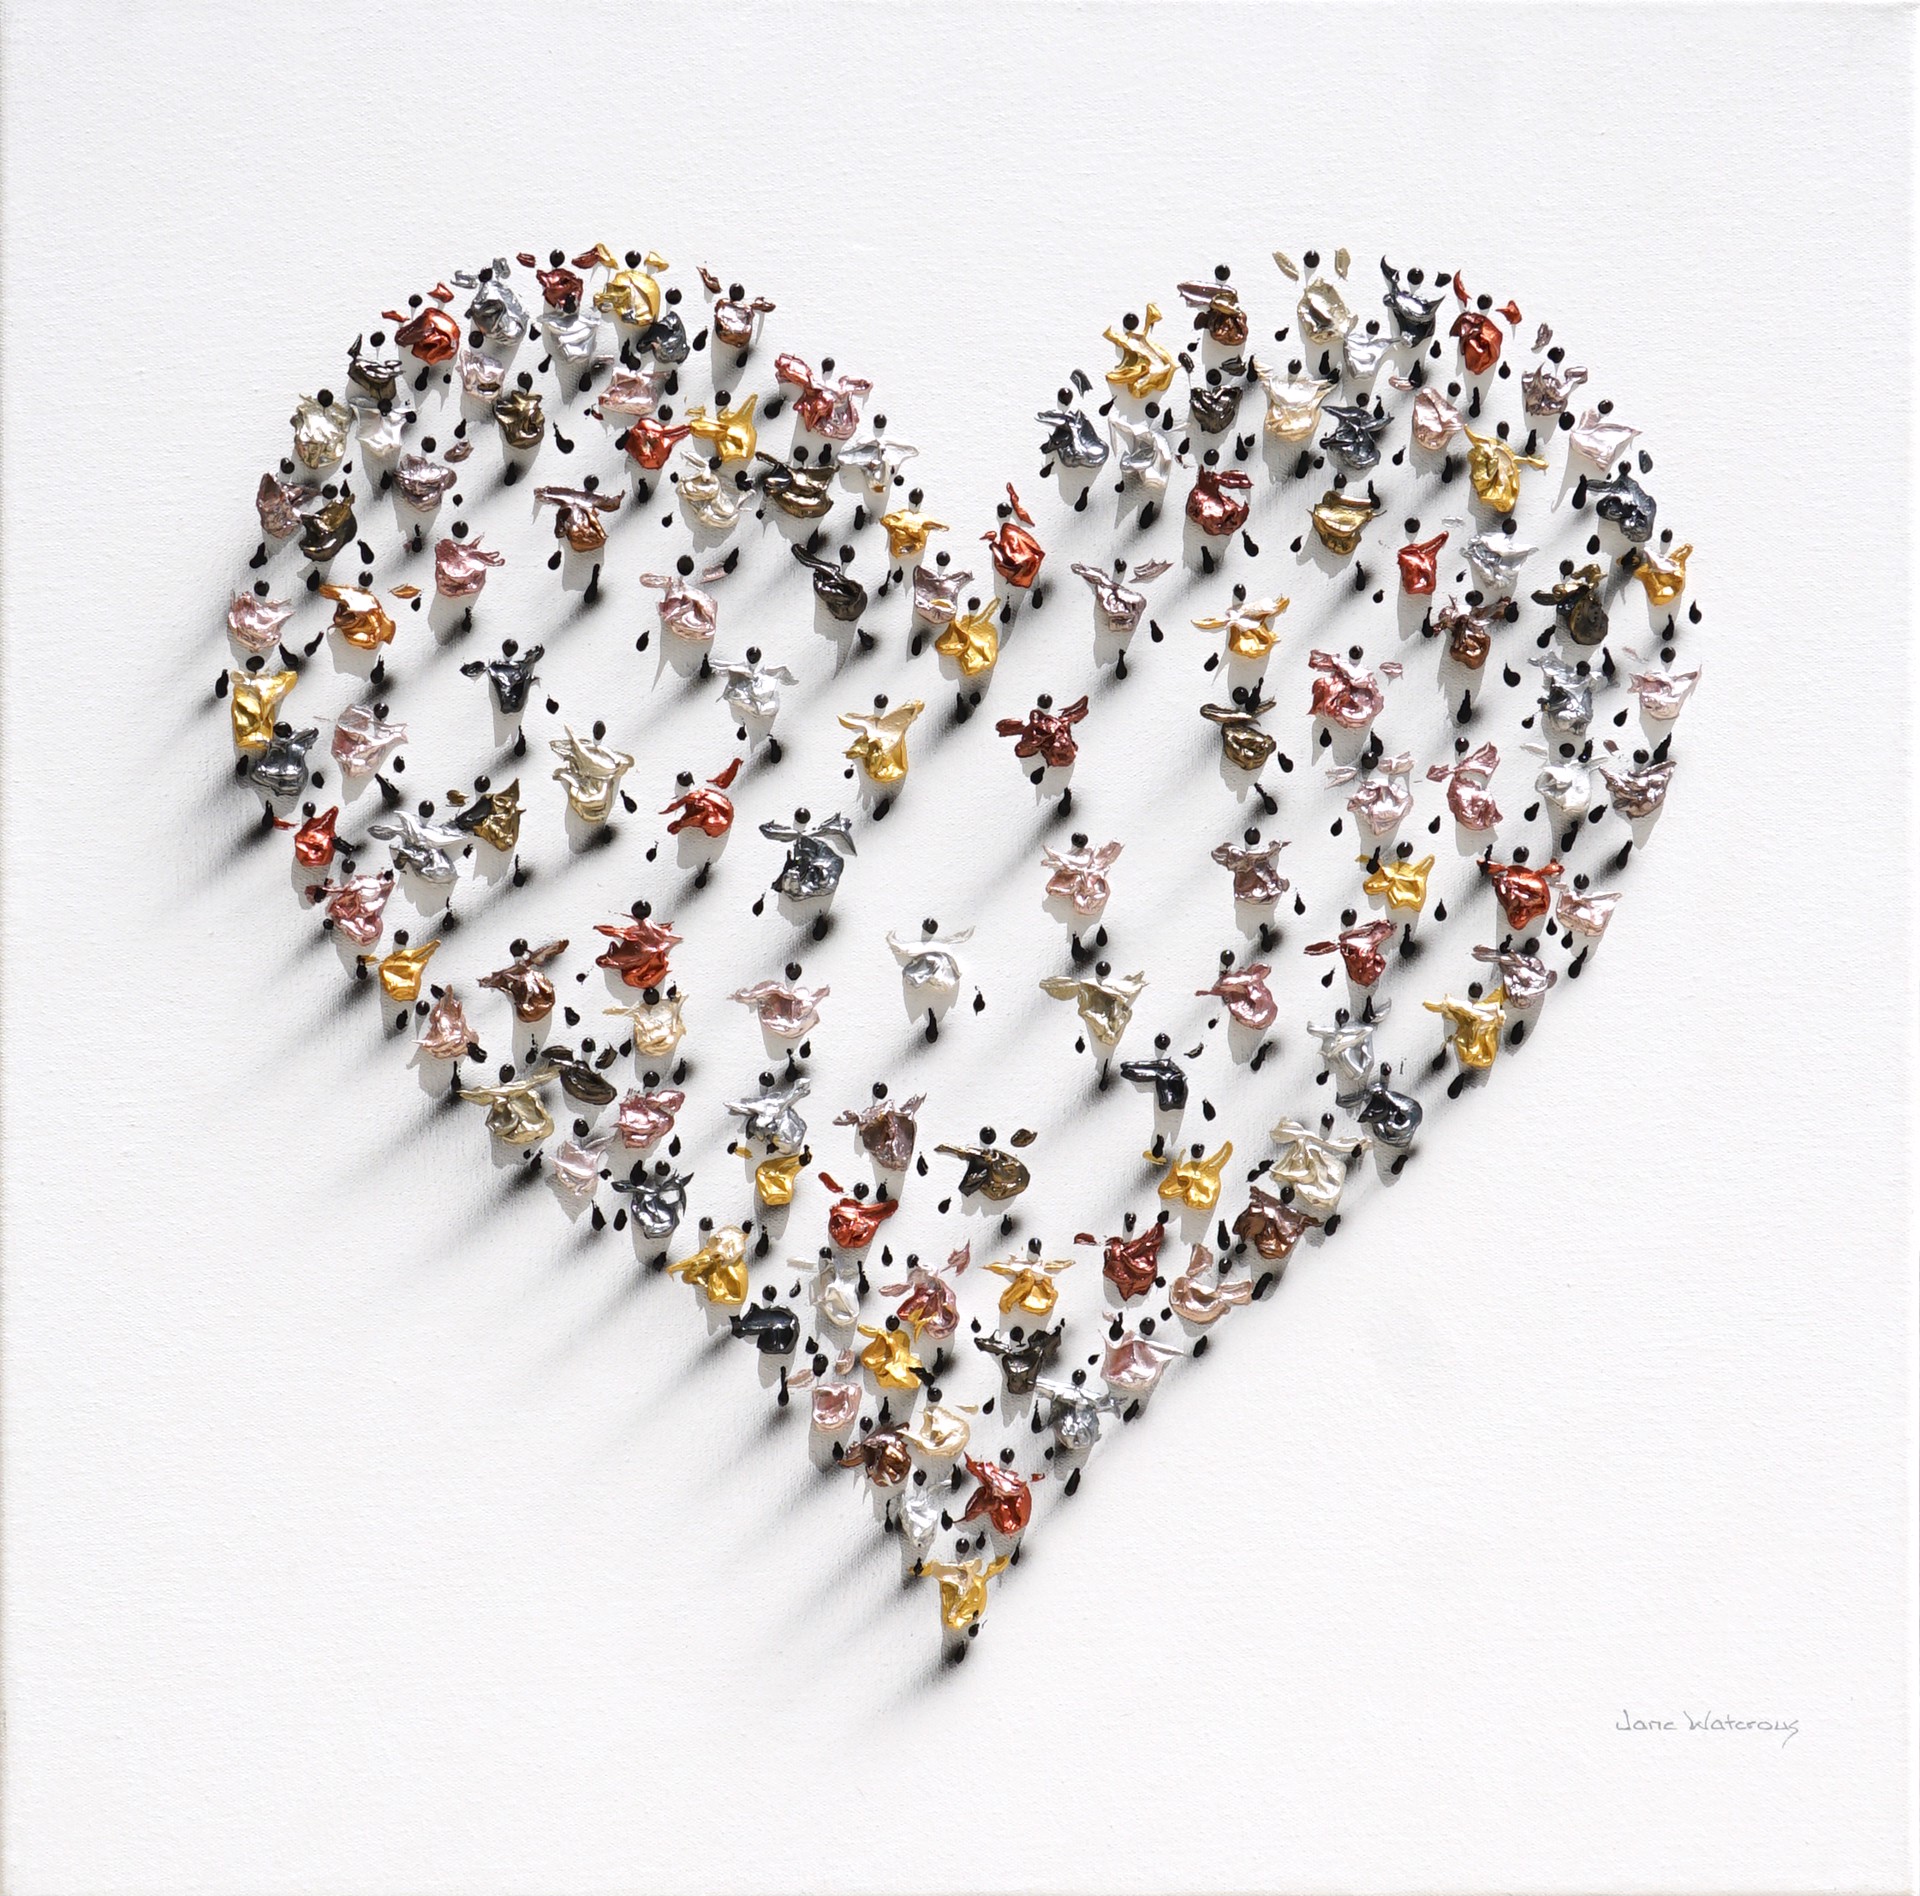 Golden Heart 3894 by Jane Waterous